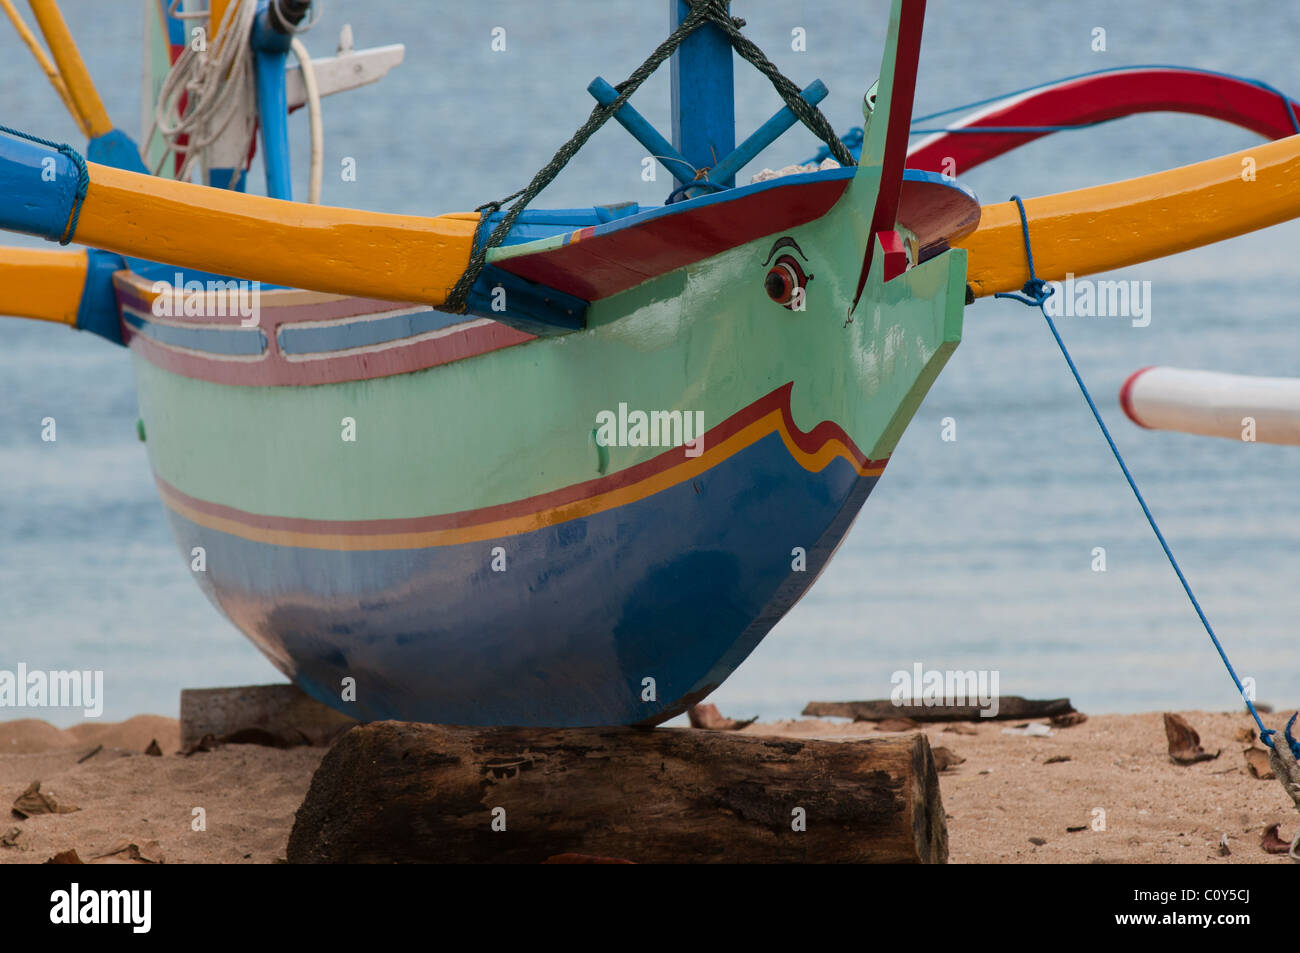 Bateau de pêche balinais appelé un jukung sur la plage de Sanur Bali Indonésie Banque D'Images